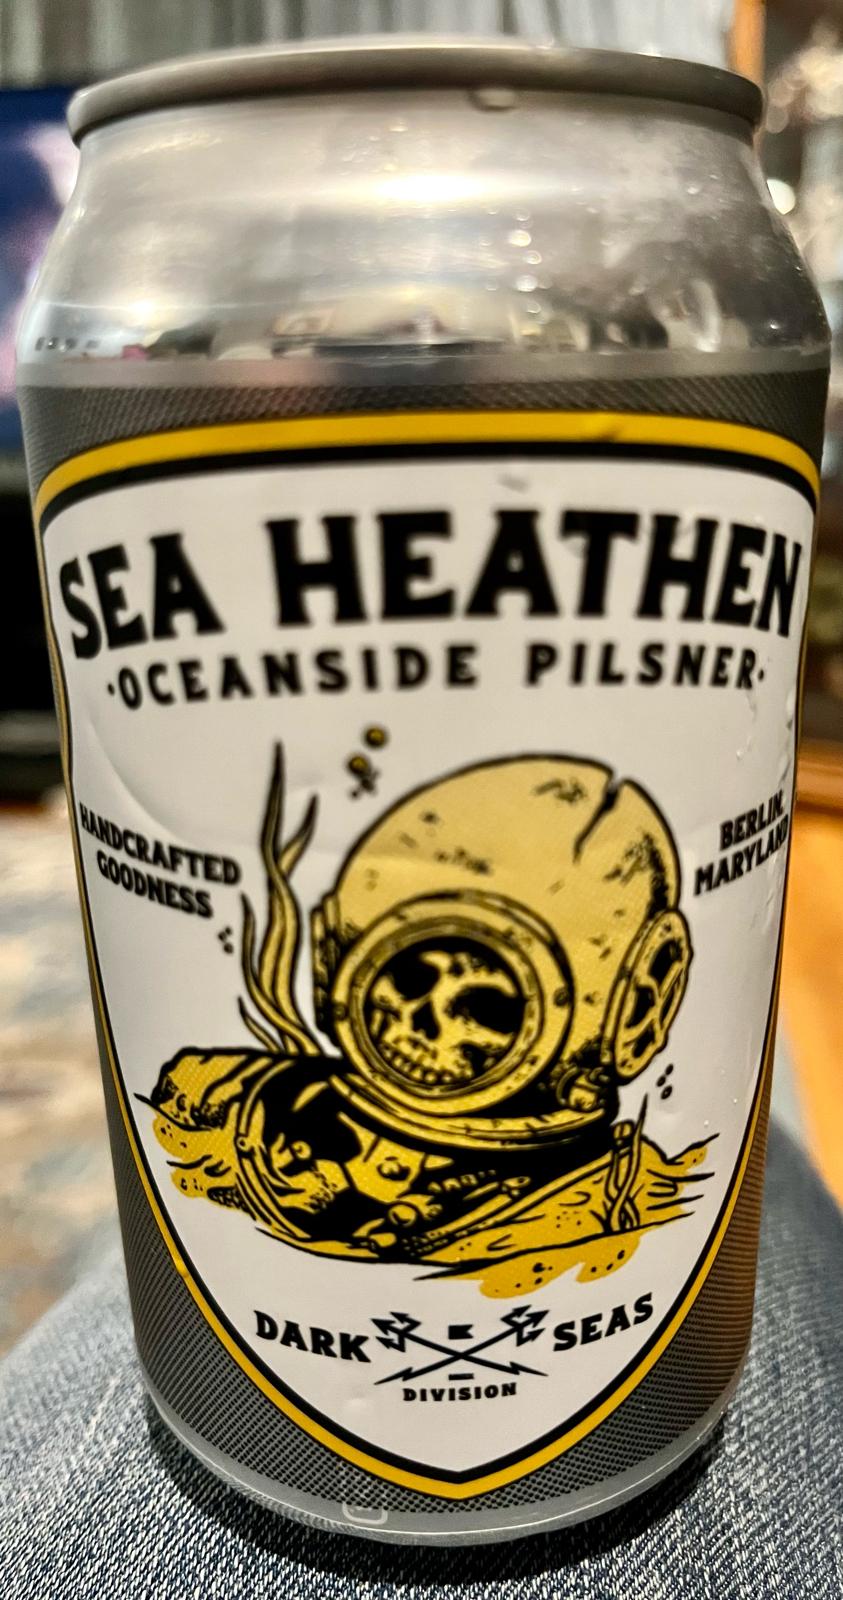 Sea Heathen